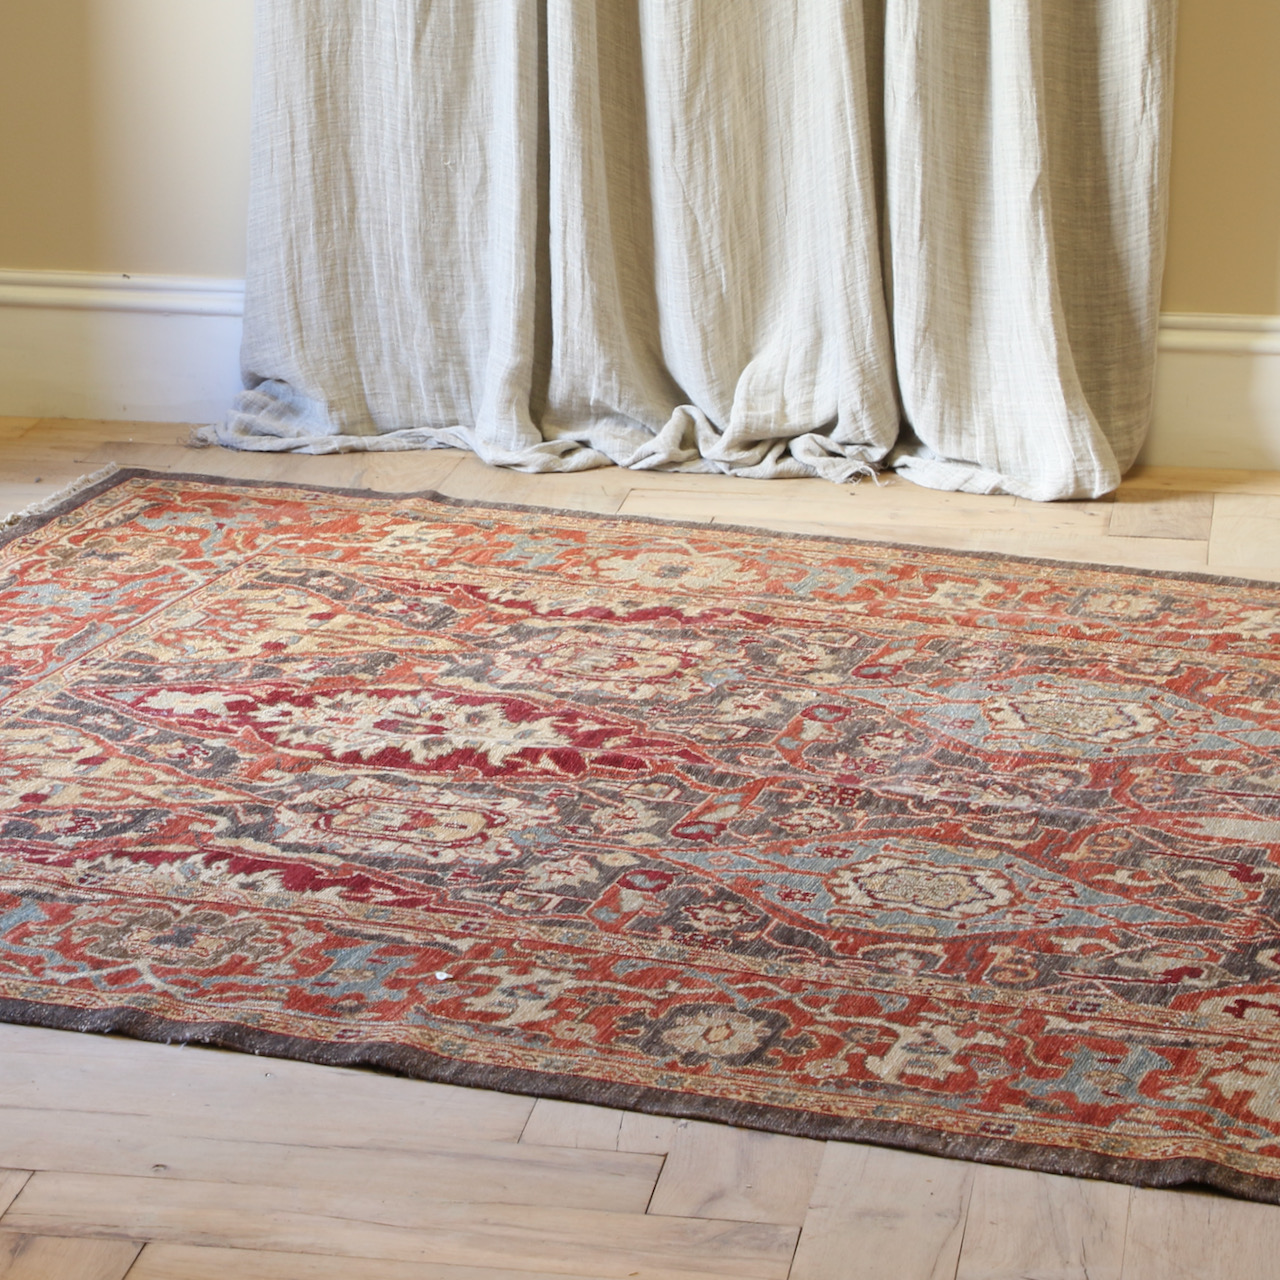 133-12 - Turkish Carpet